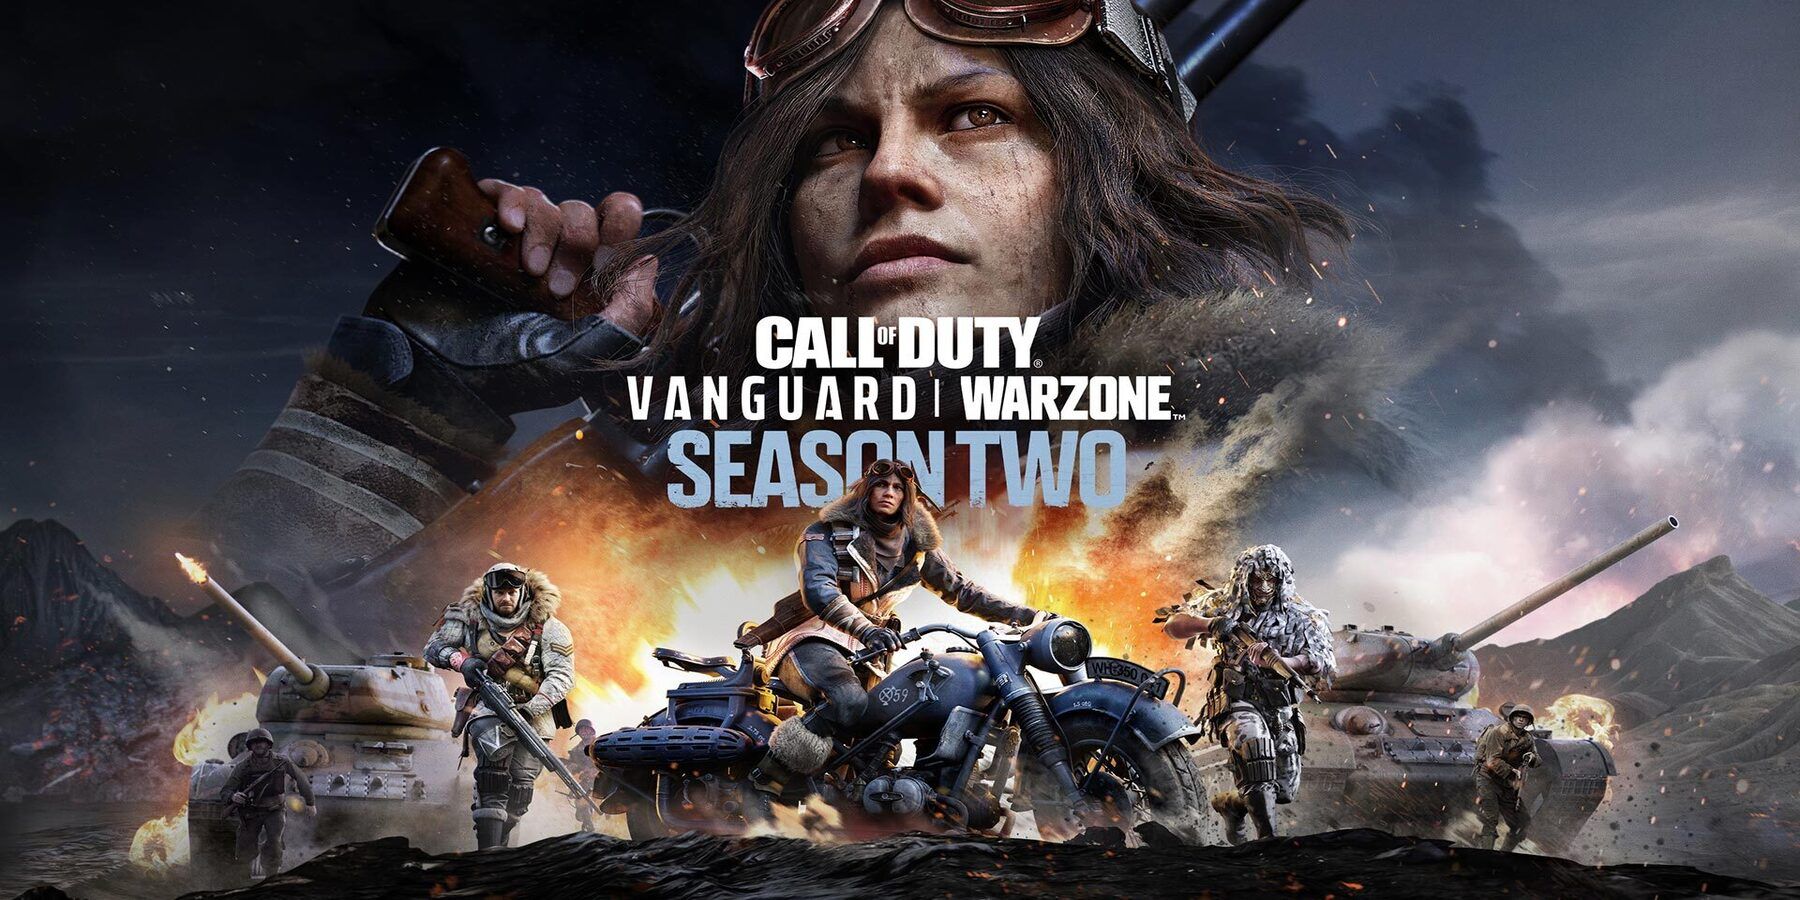 Поклонники Call of Duty: Warzone верят, что Варго все еще прослушивается, несмотря на исправление